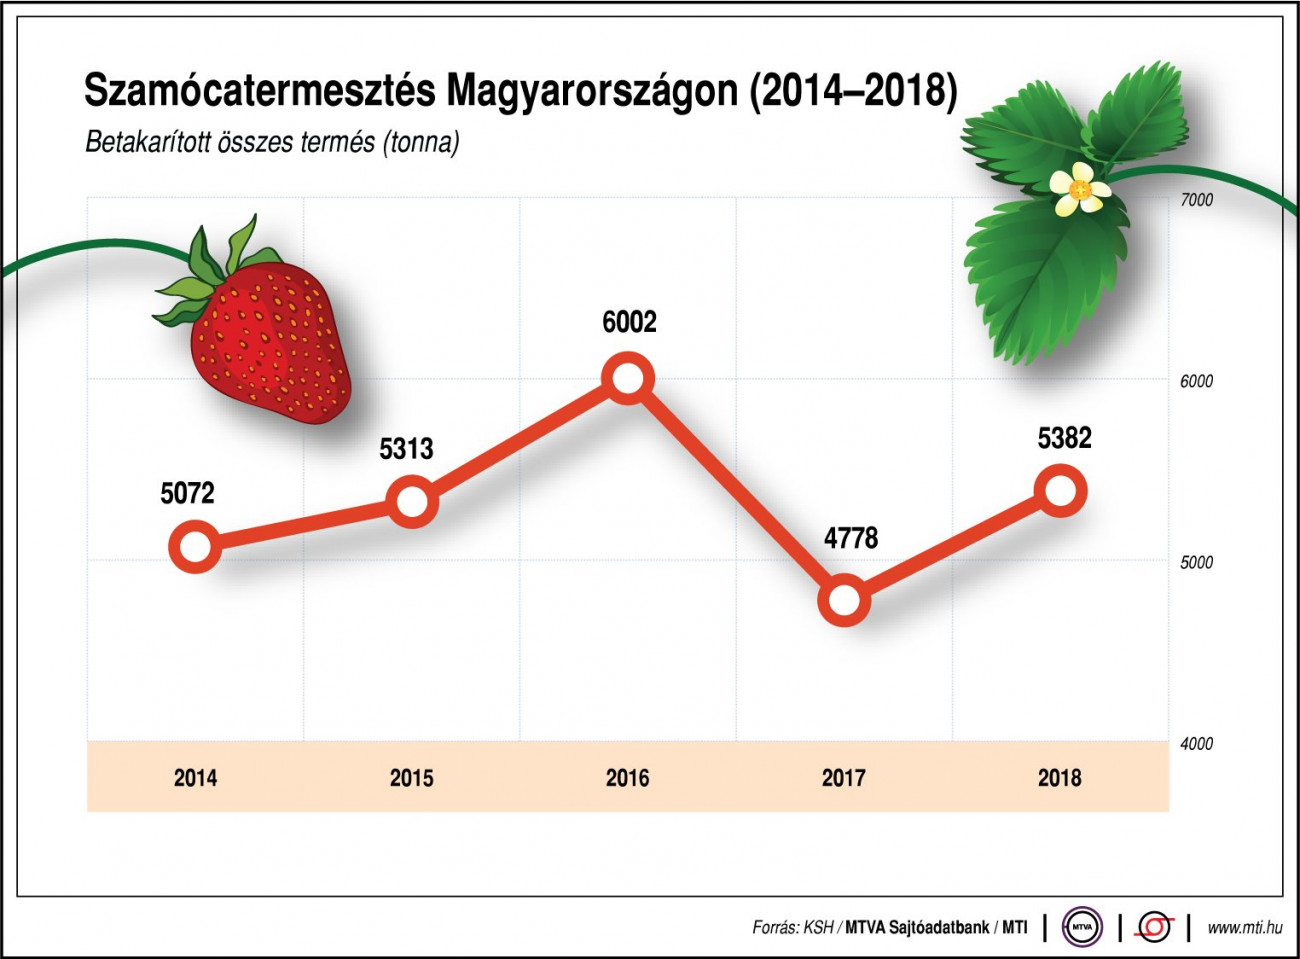 Szamócatermesztés Magyarországon (2014-2018);
Betakarított összes termés (tonna)